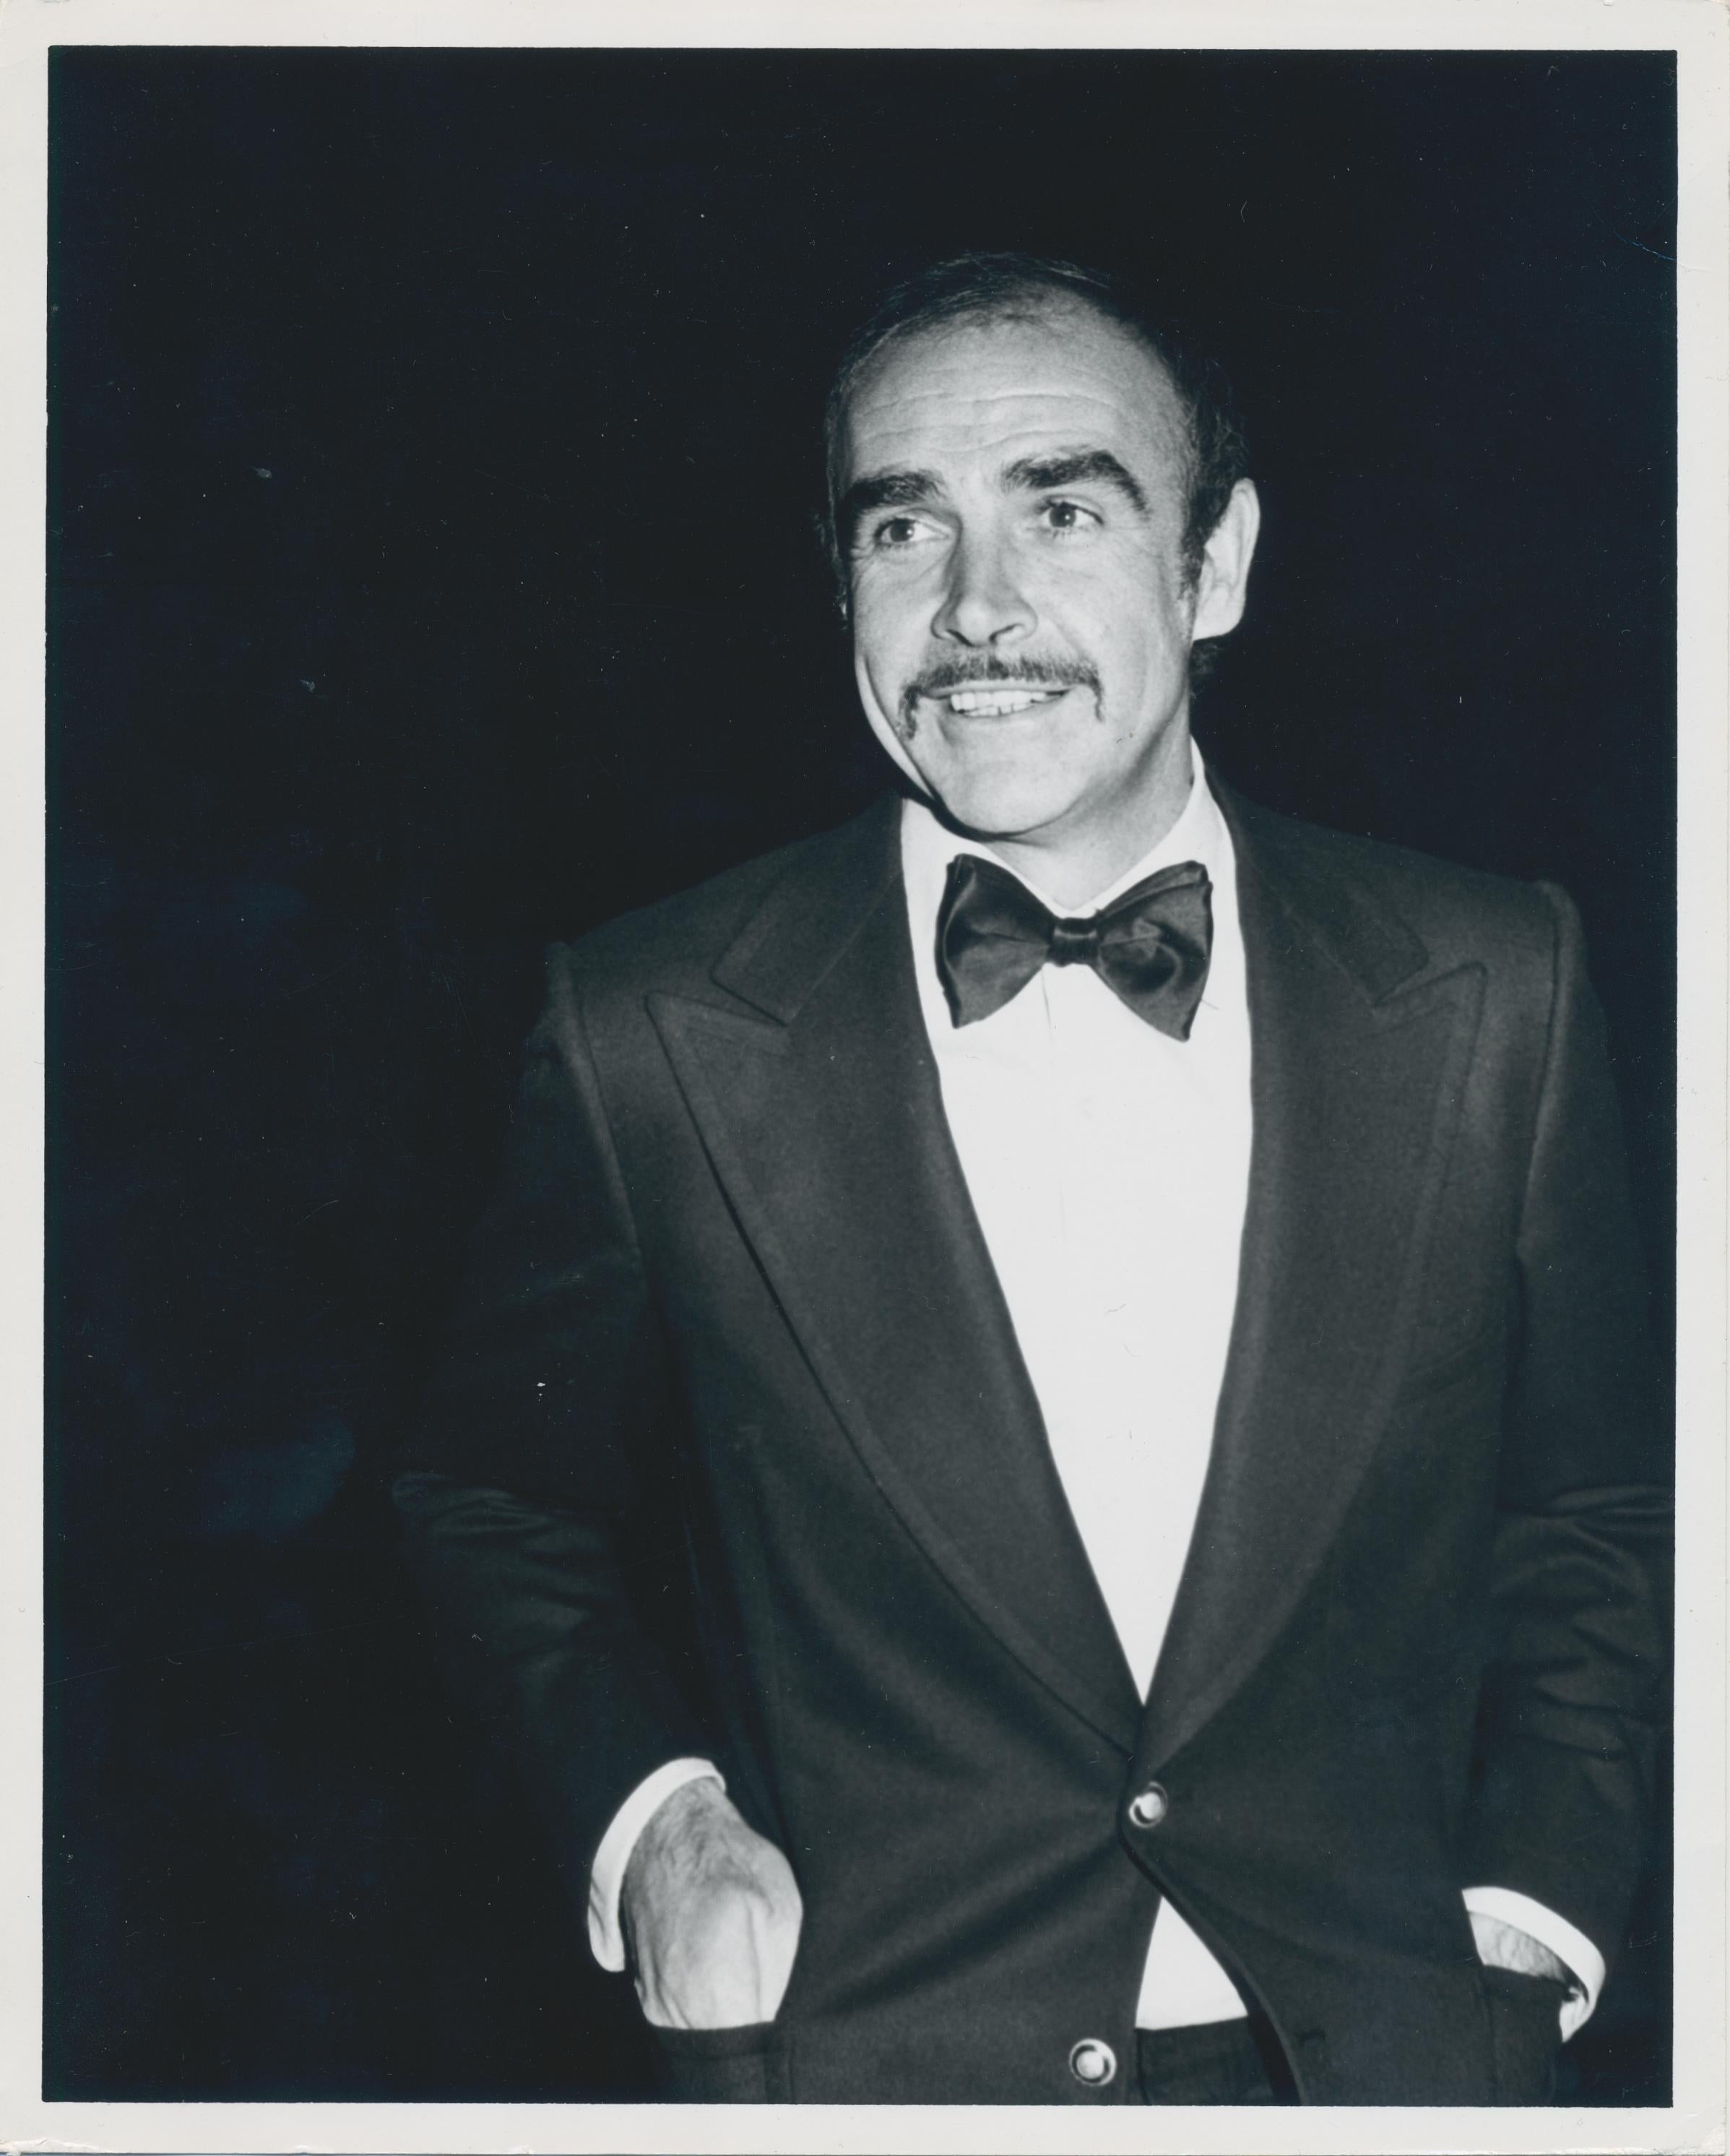 Paul Schmulbach Portrait Photograph - Sean Connery wearing a suit, unkown date